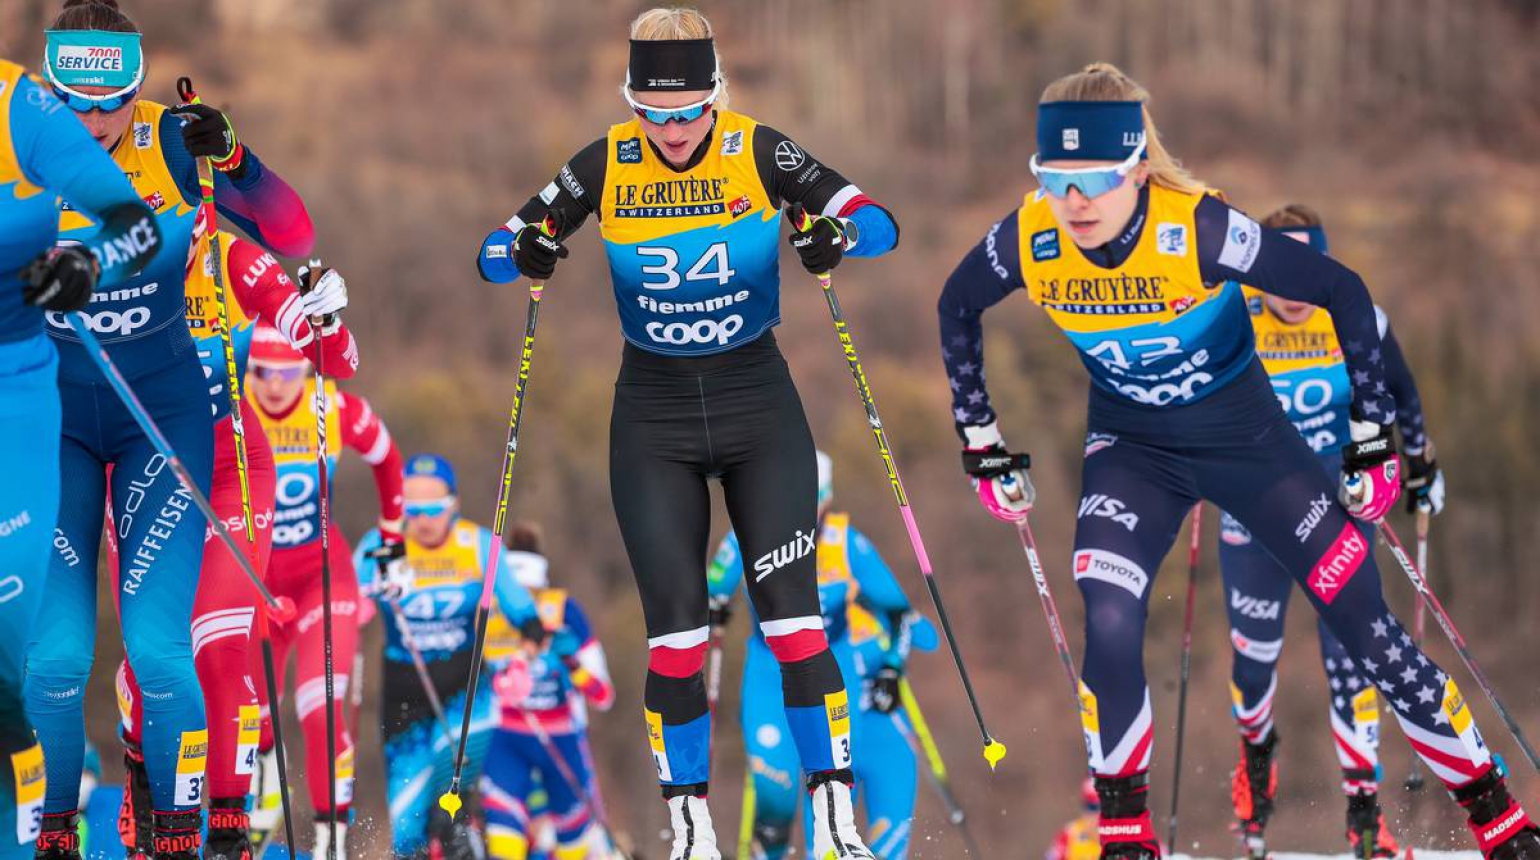 Janatová se v Tour de Ski drží v nejlepší třicítce, v 5. etapě byla 35. Hynčicová ze závodu s hromadným startem odstoupila